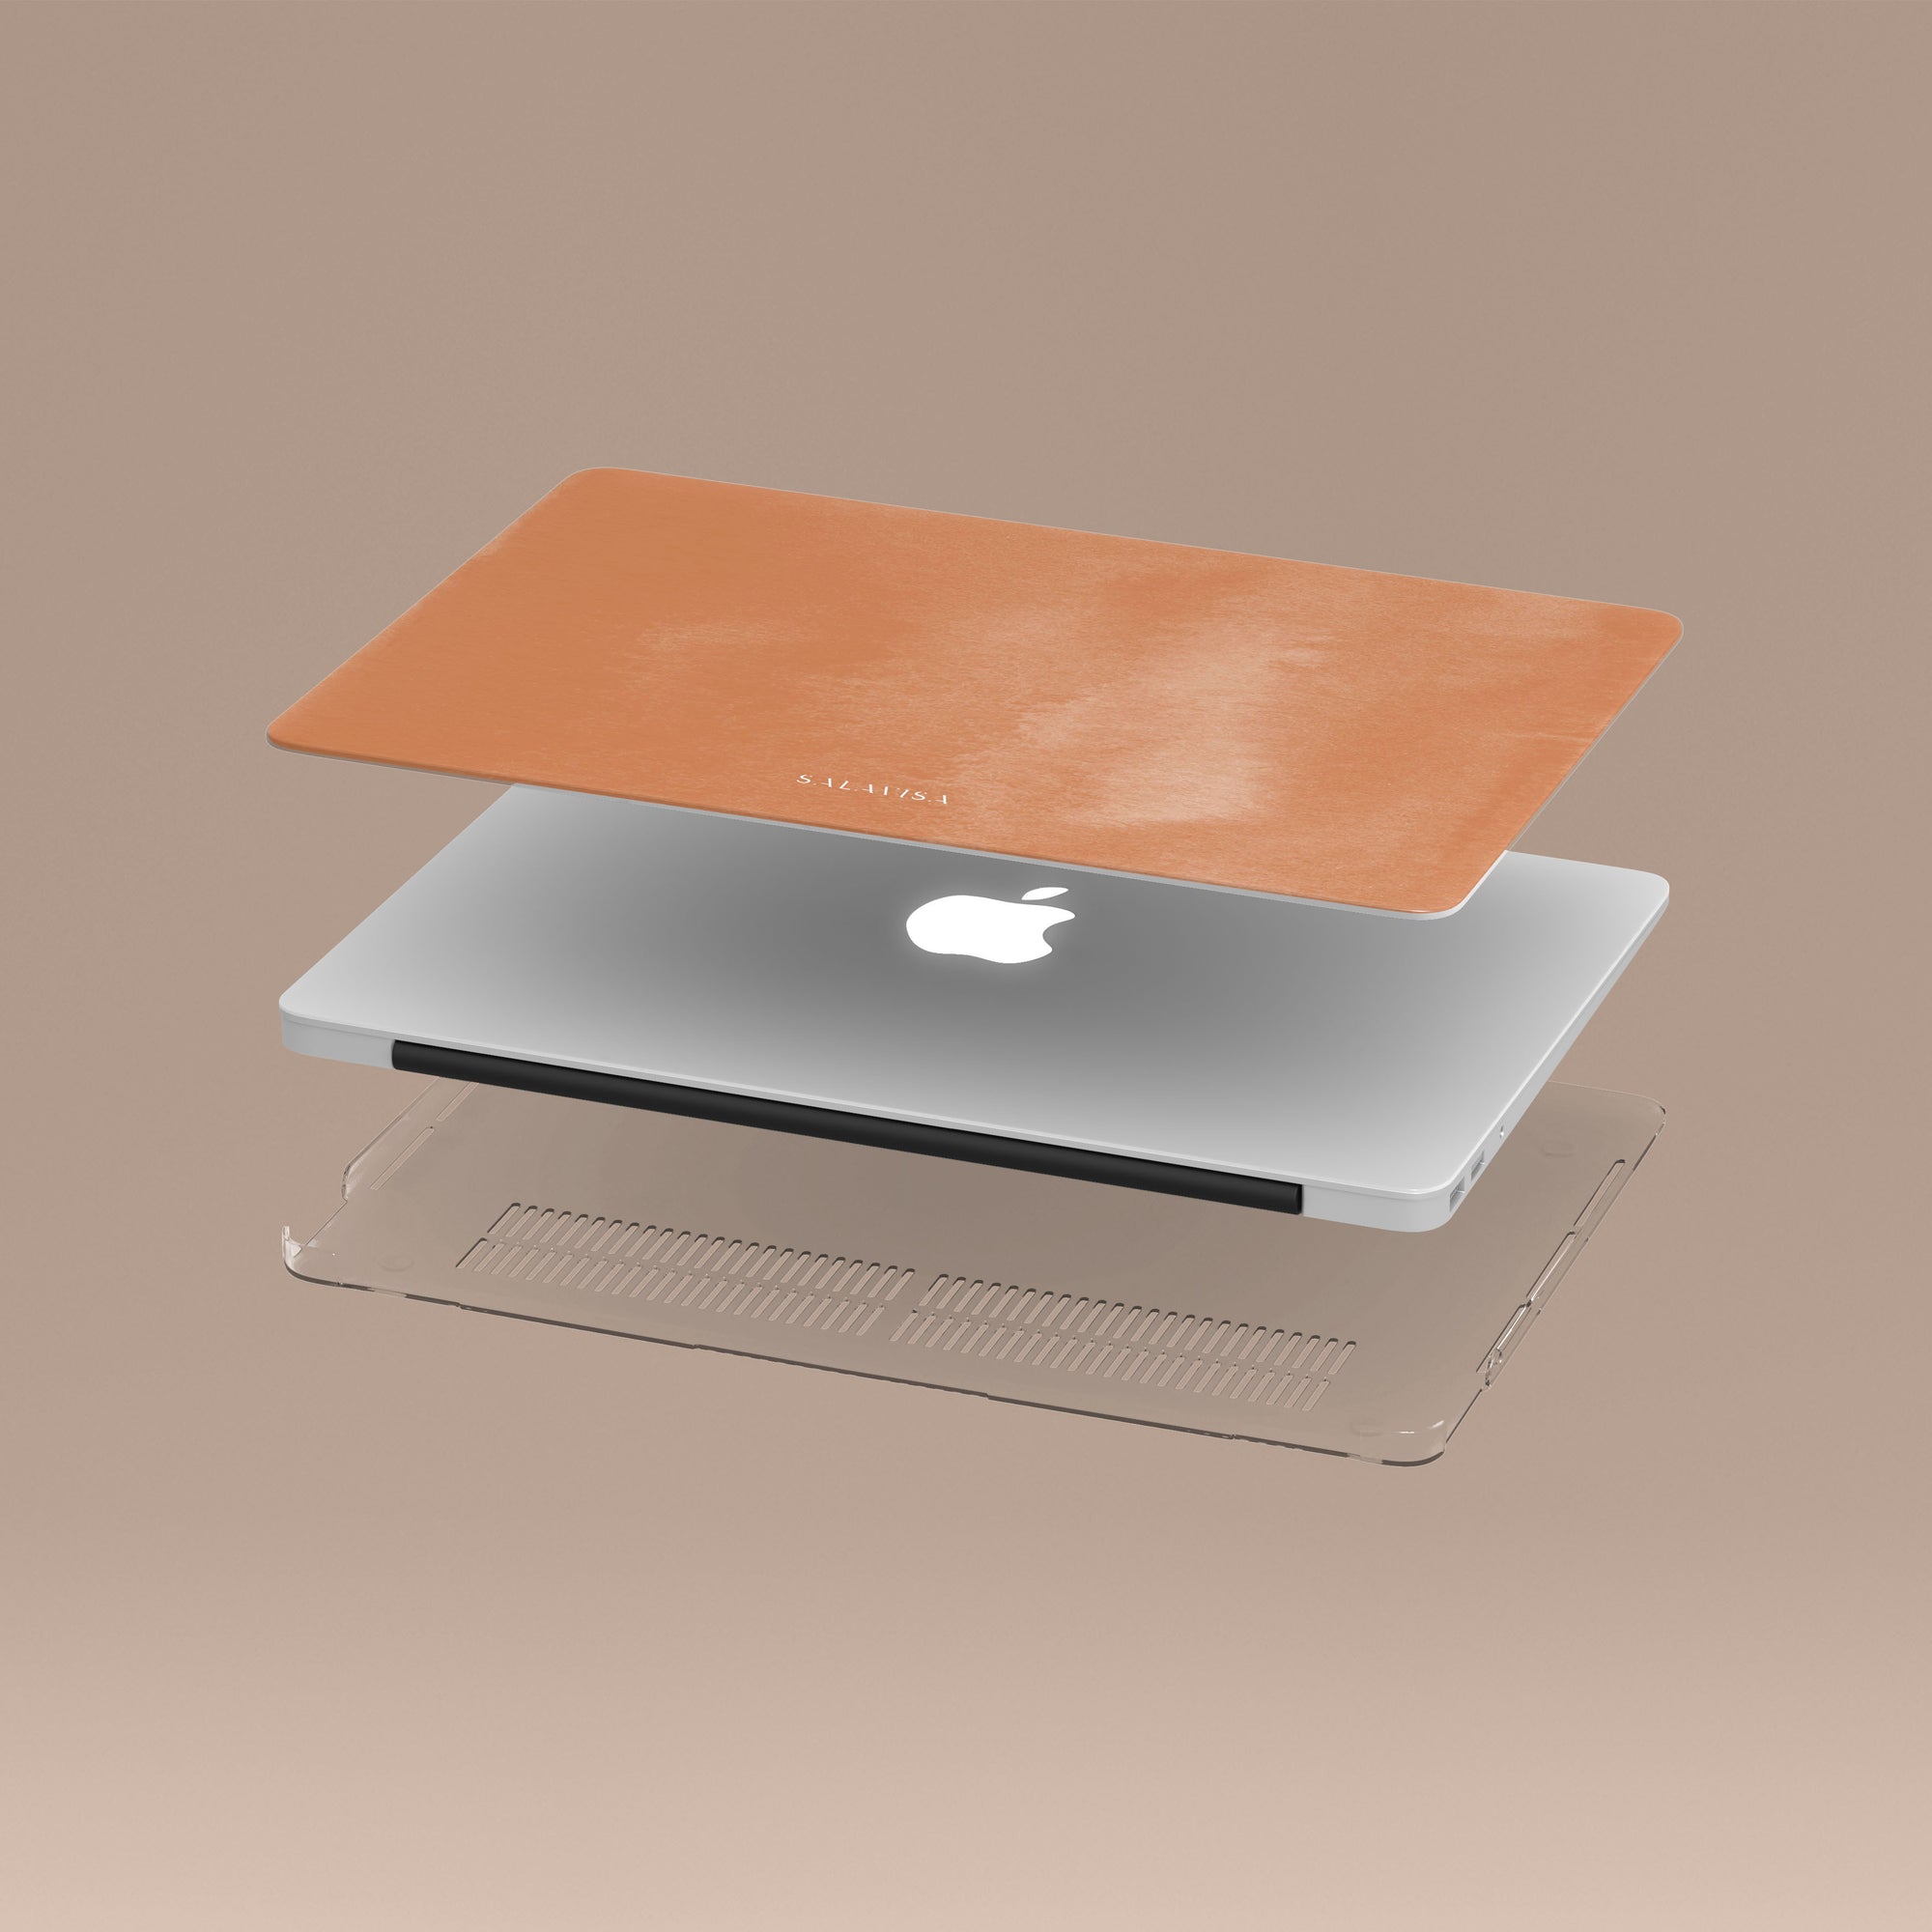 Peach Watercolor MacBook Case MacBook Cases - SALAVISA